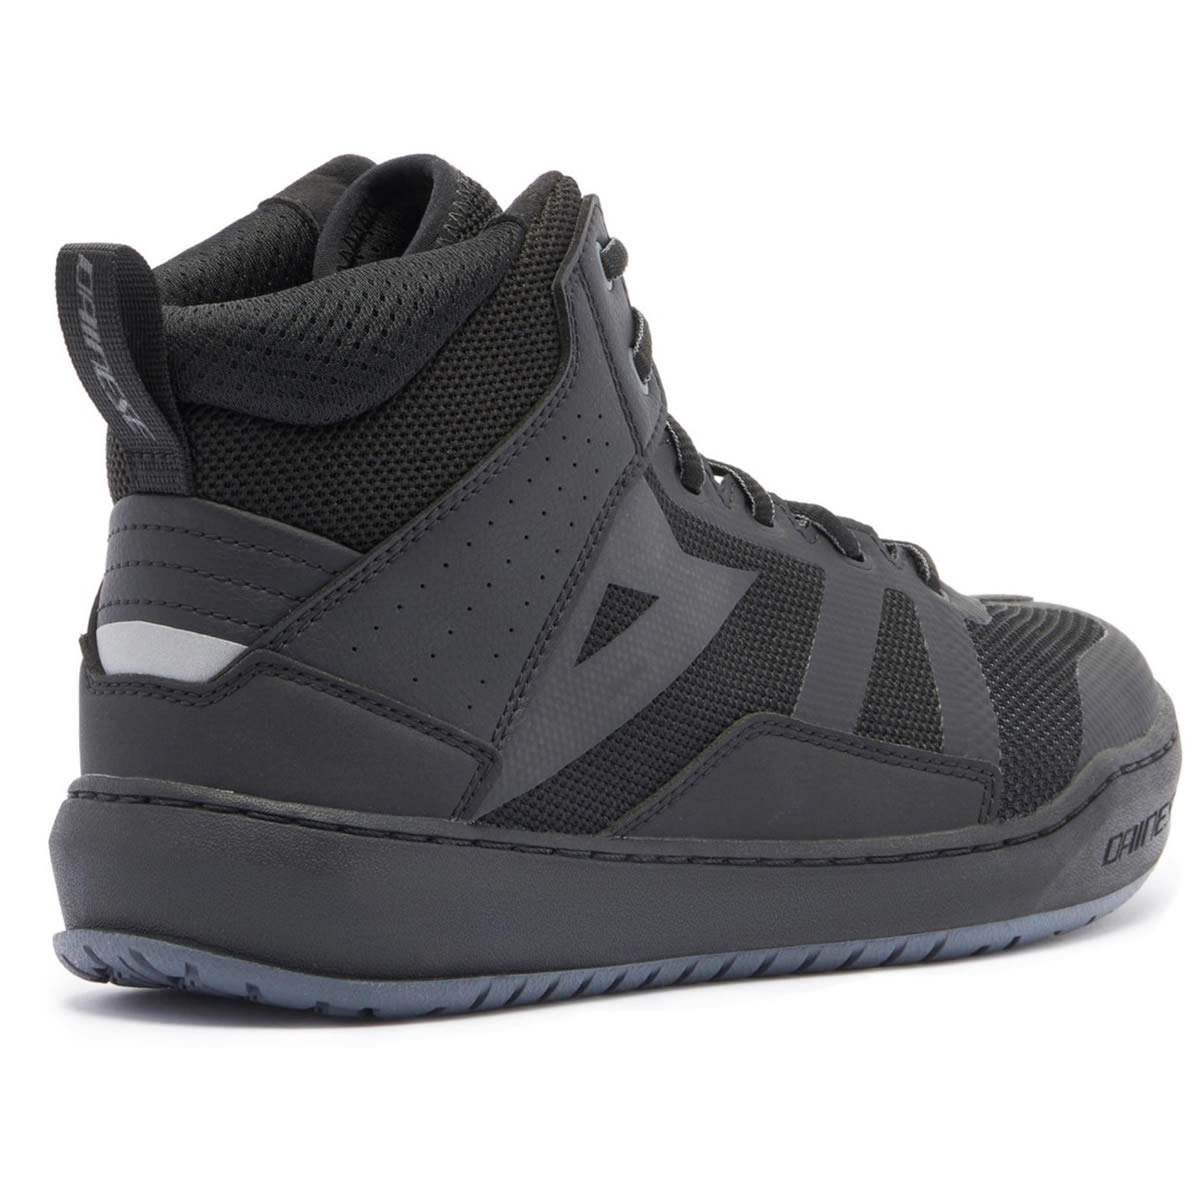 Dainese Suburb Air Schuhe, schwarz-schwarz